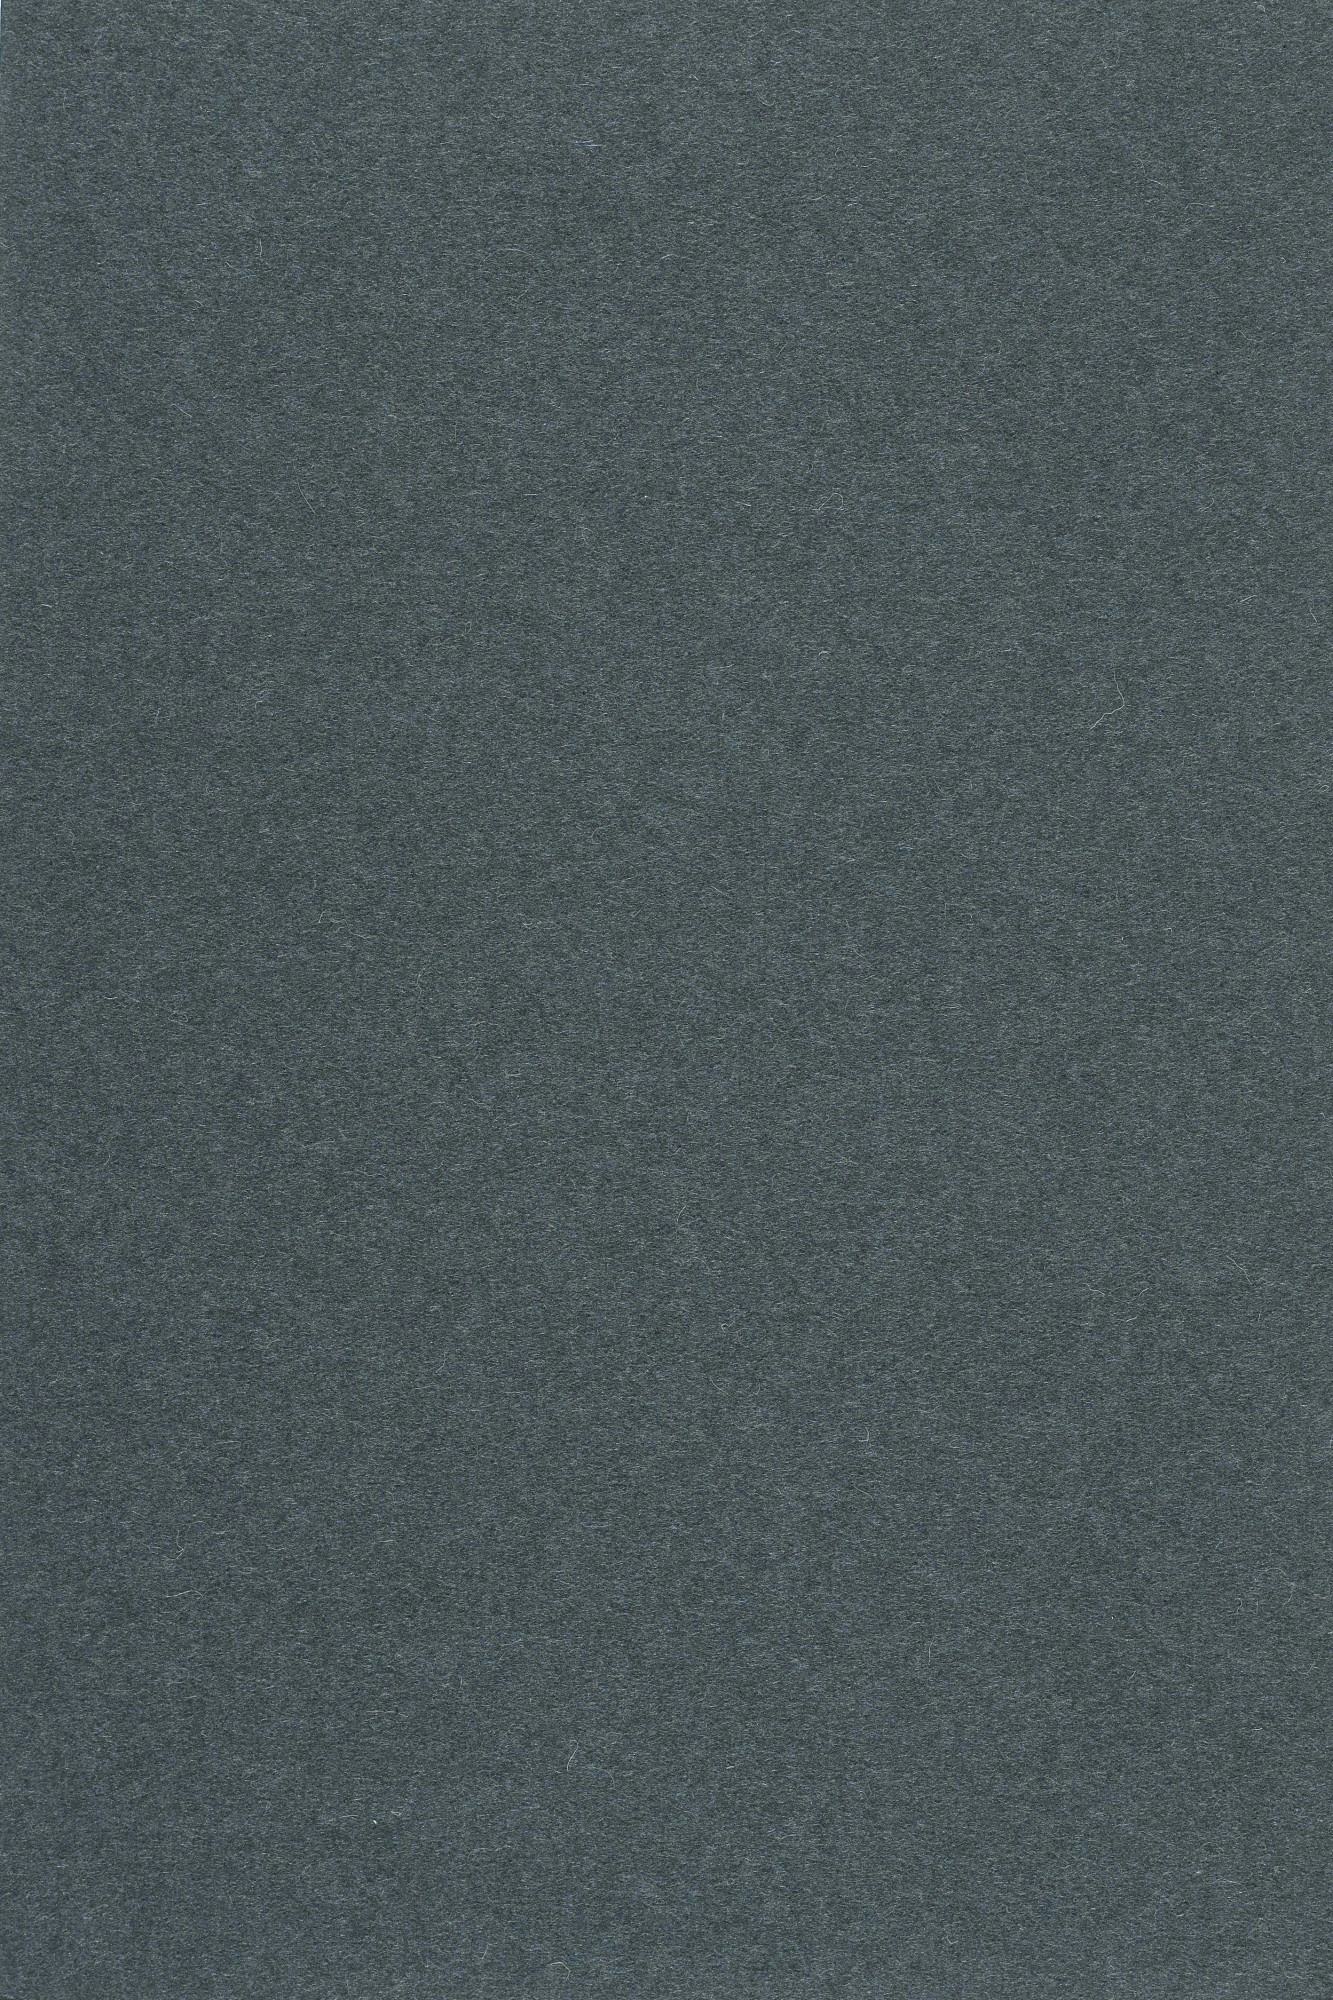 Fabric sample Divina 3 181 grey